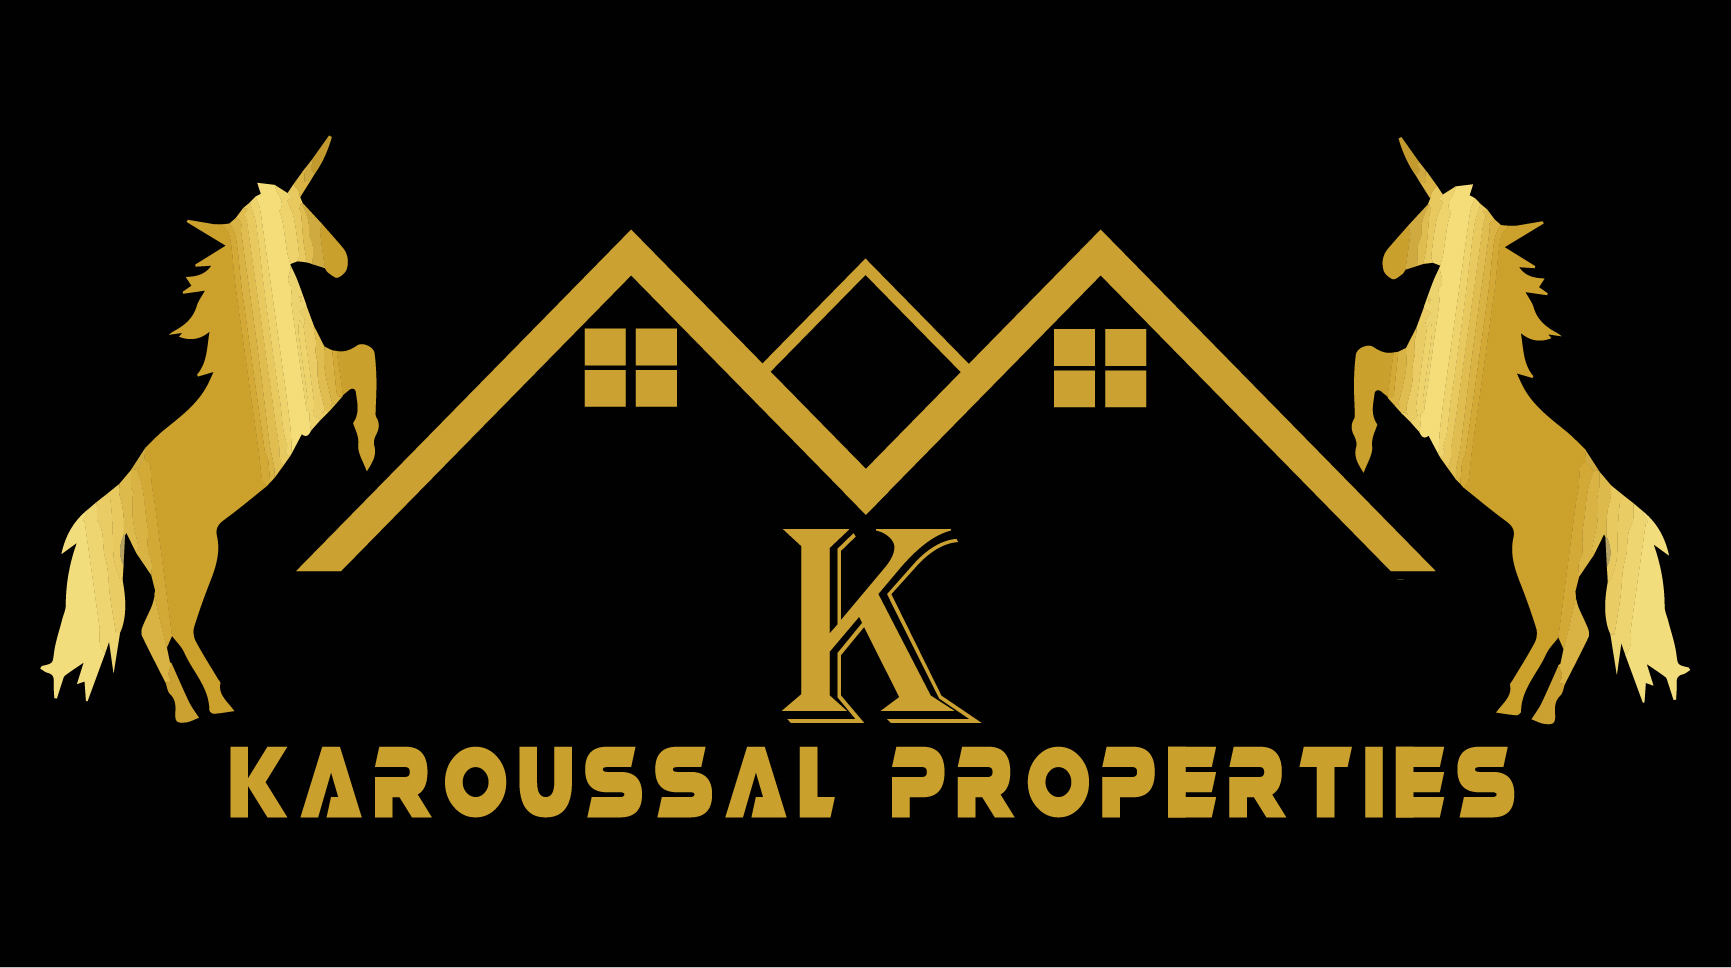 Karoussal : Faites de vos rêves une realité.-Bienvenue sur Karoussal Properties, votre partenaire de confiance dans le monde passionnant de l'immobilier en Afrique.